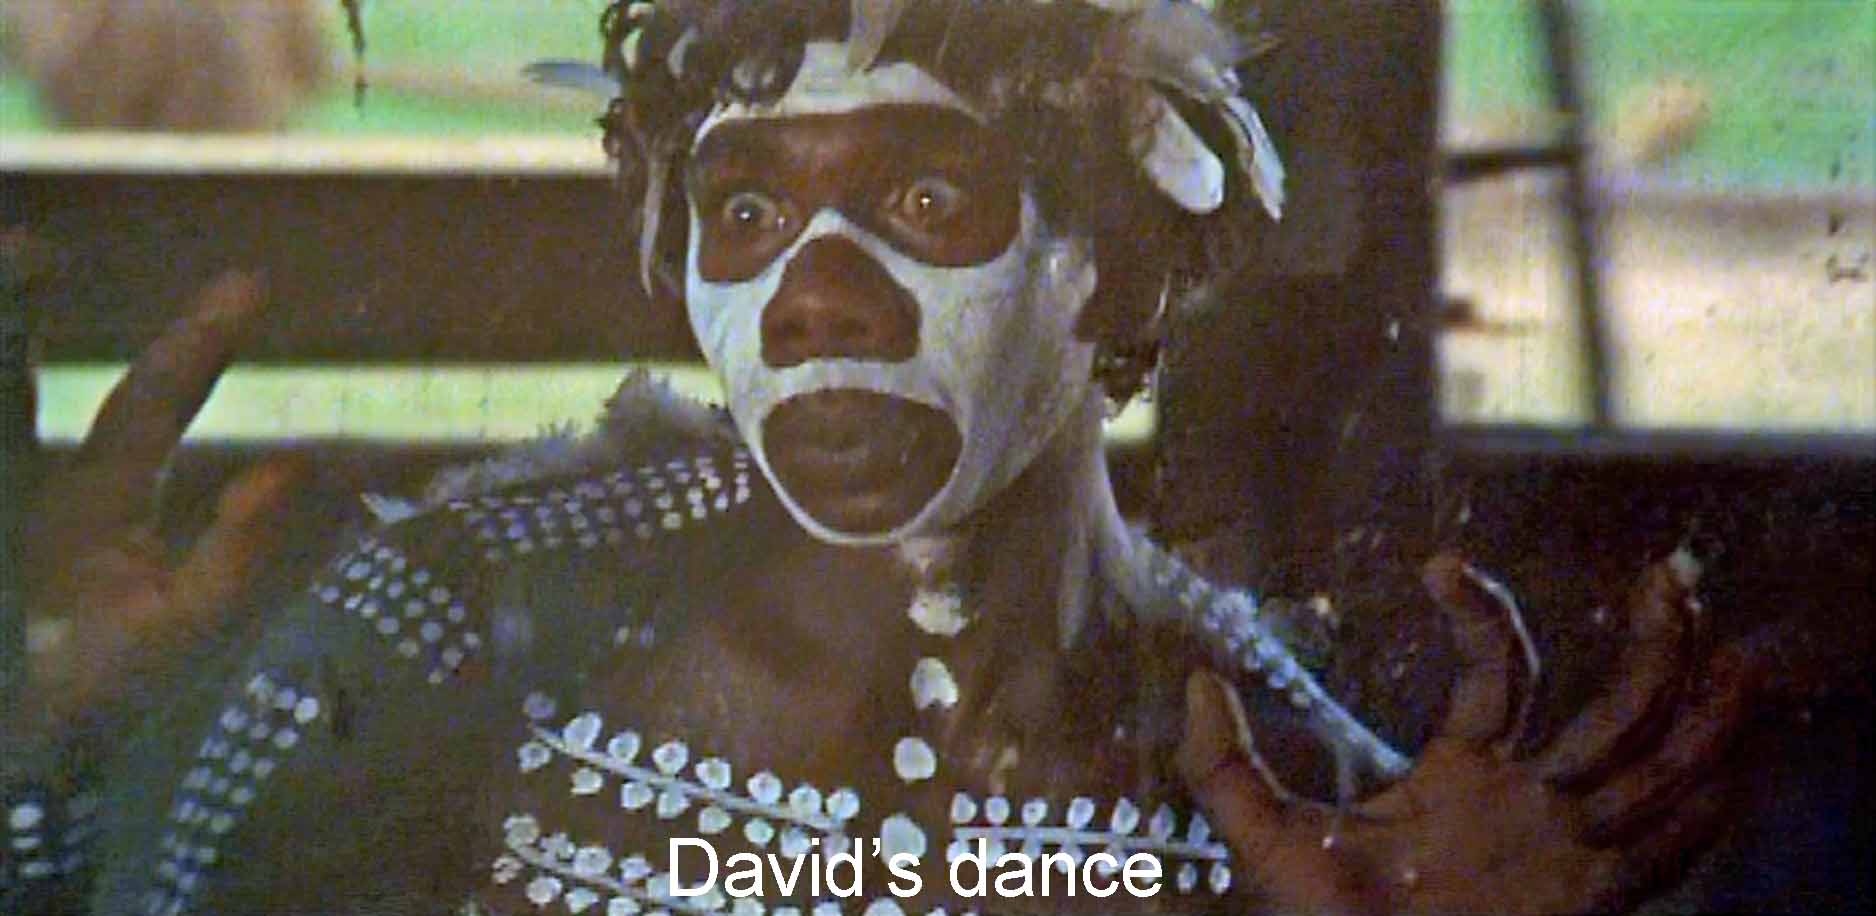 David's dance